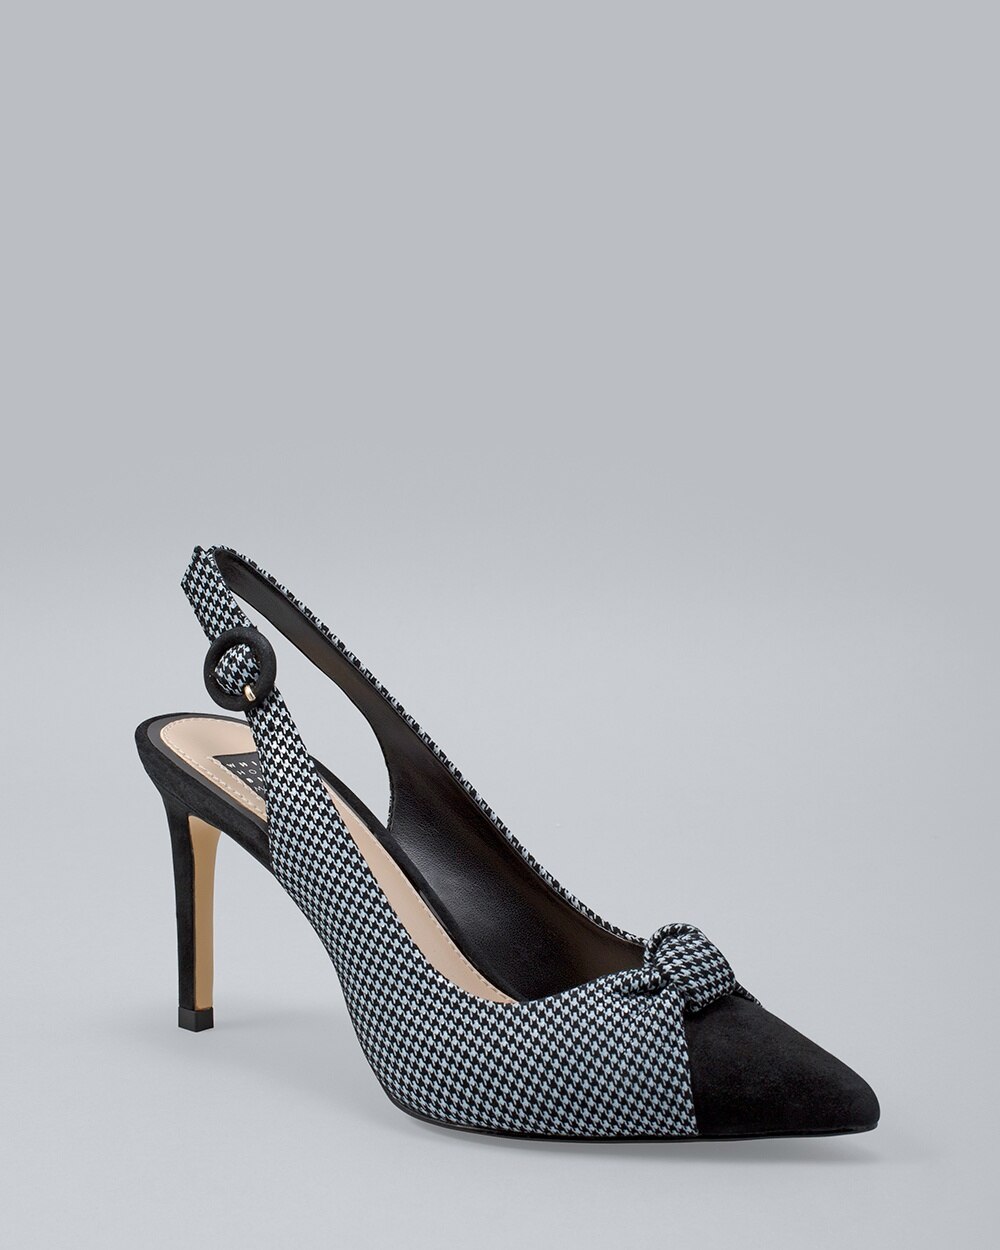 houndstooth pumps heels